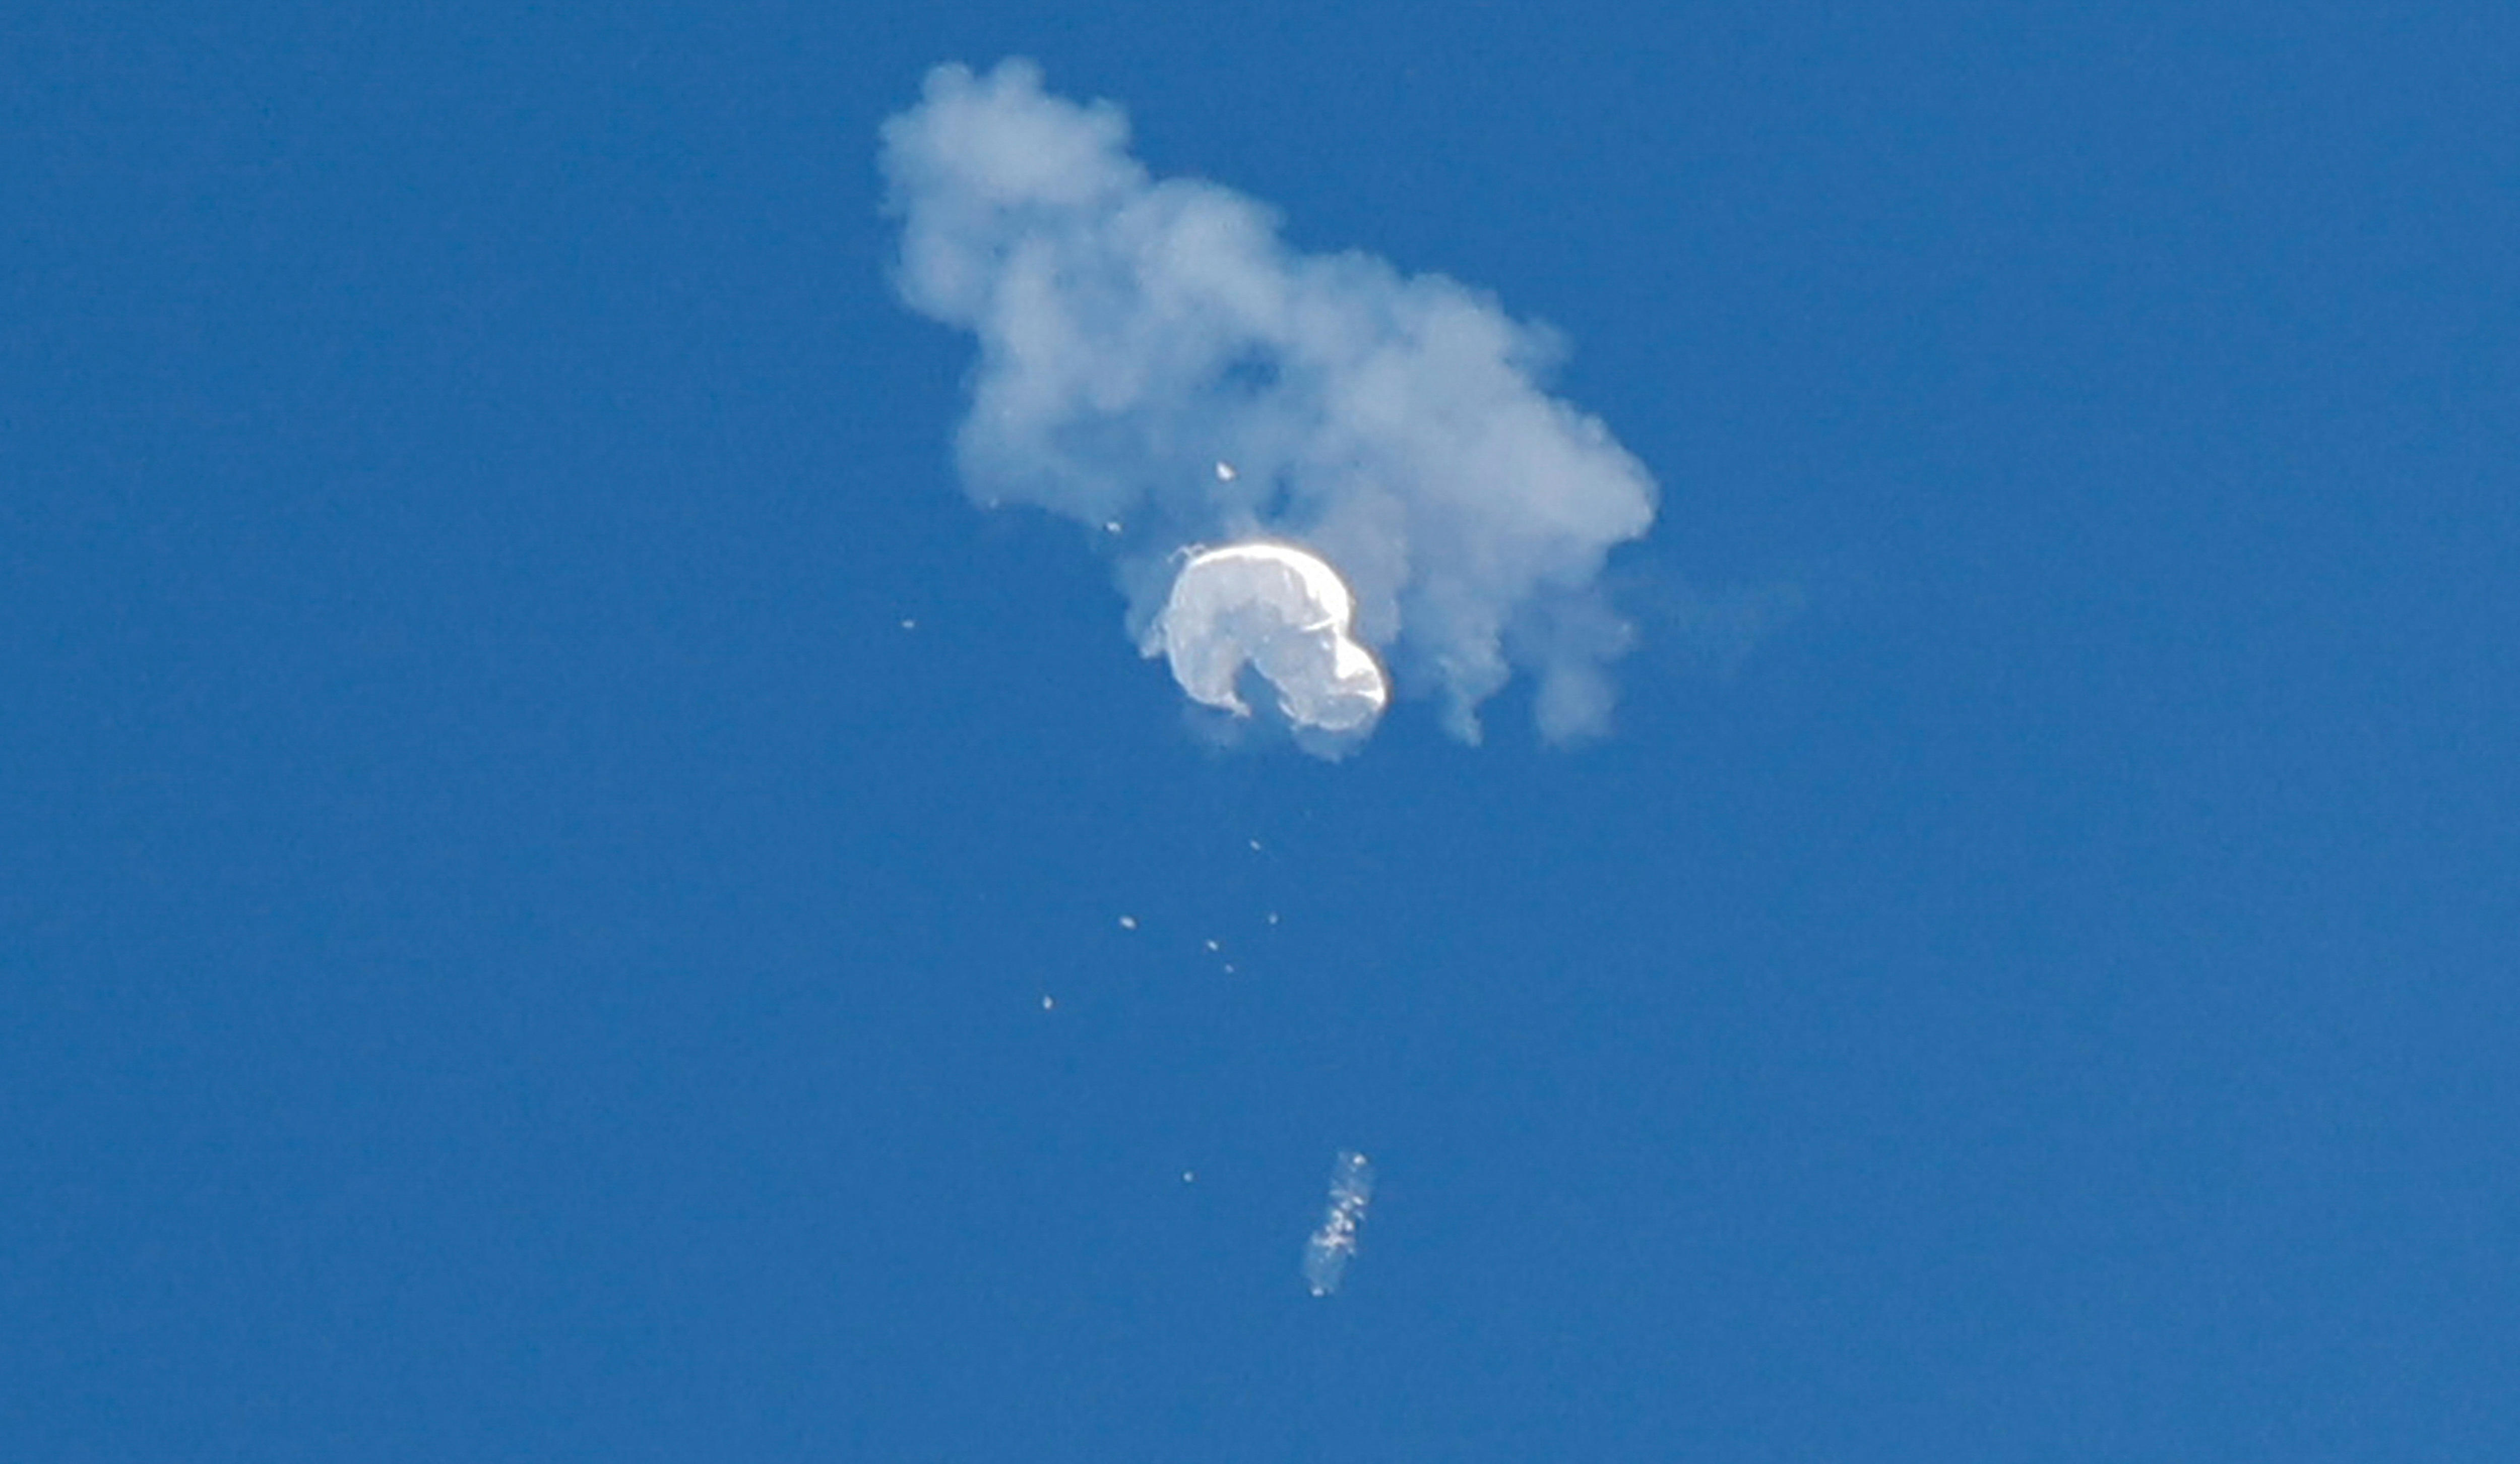 白色气球从天而降时，一缕烟雾和碎片围绕着它。